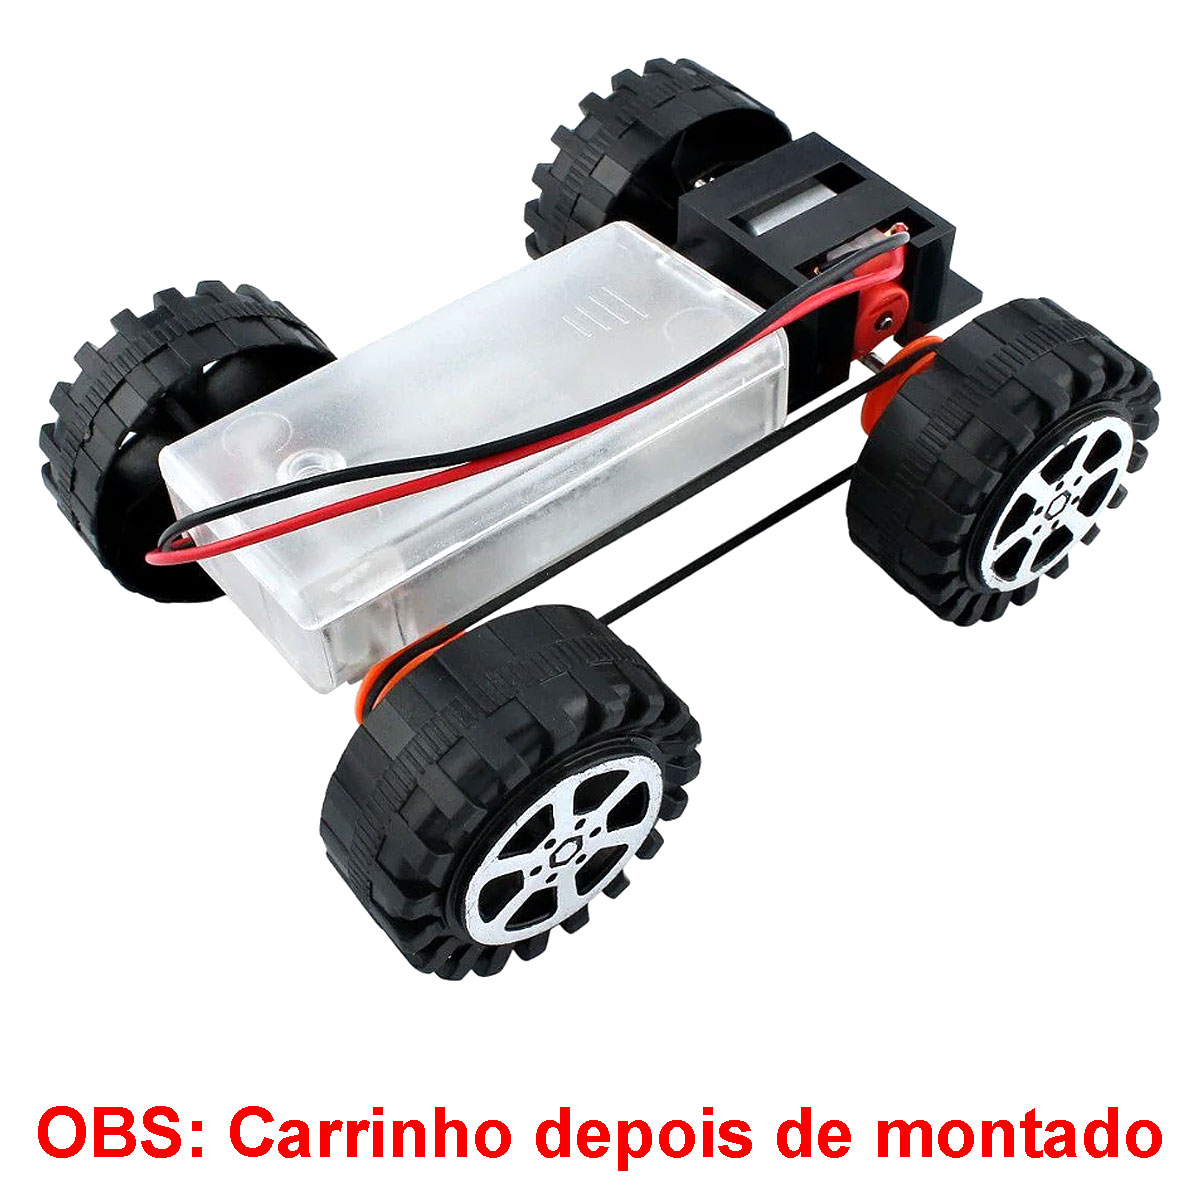 Carrinho Robô - Chassi Metálico para Robótica Educacional - F17924